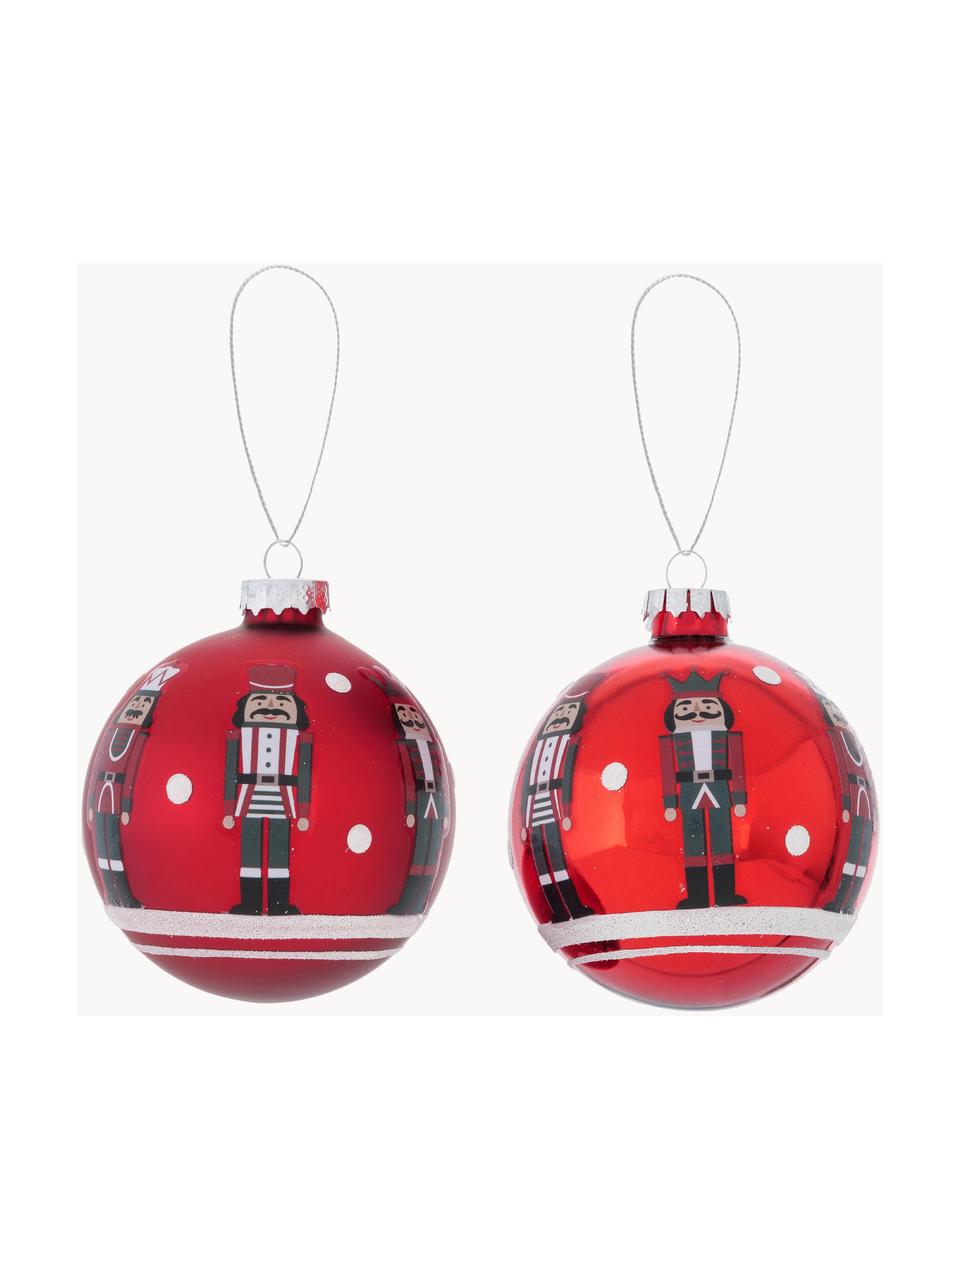 Kerstballen Nutcracker,, 2 stuks, Rood, wit, zwart, Ø 8 cm